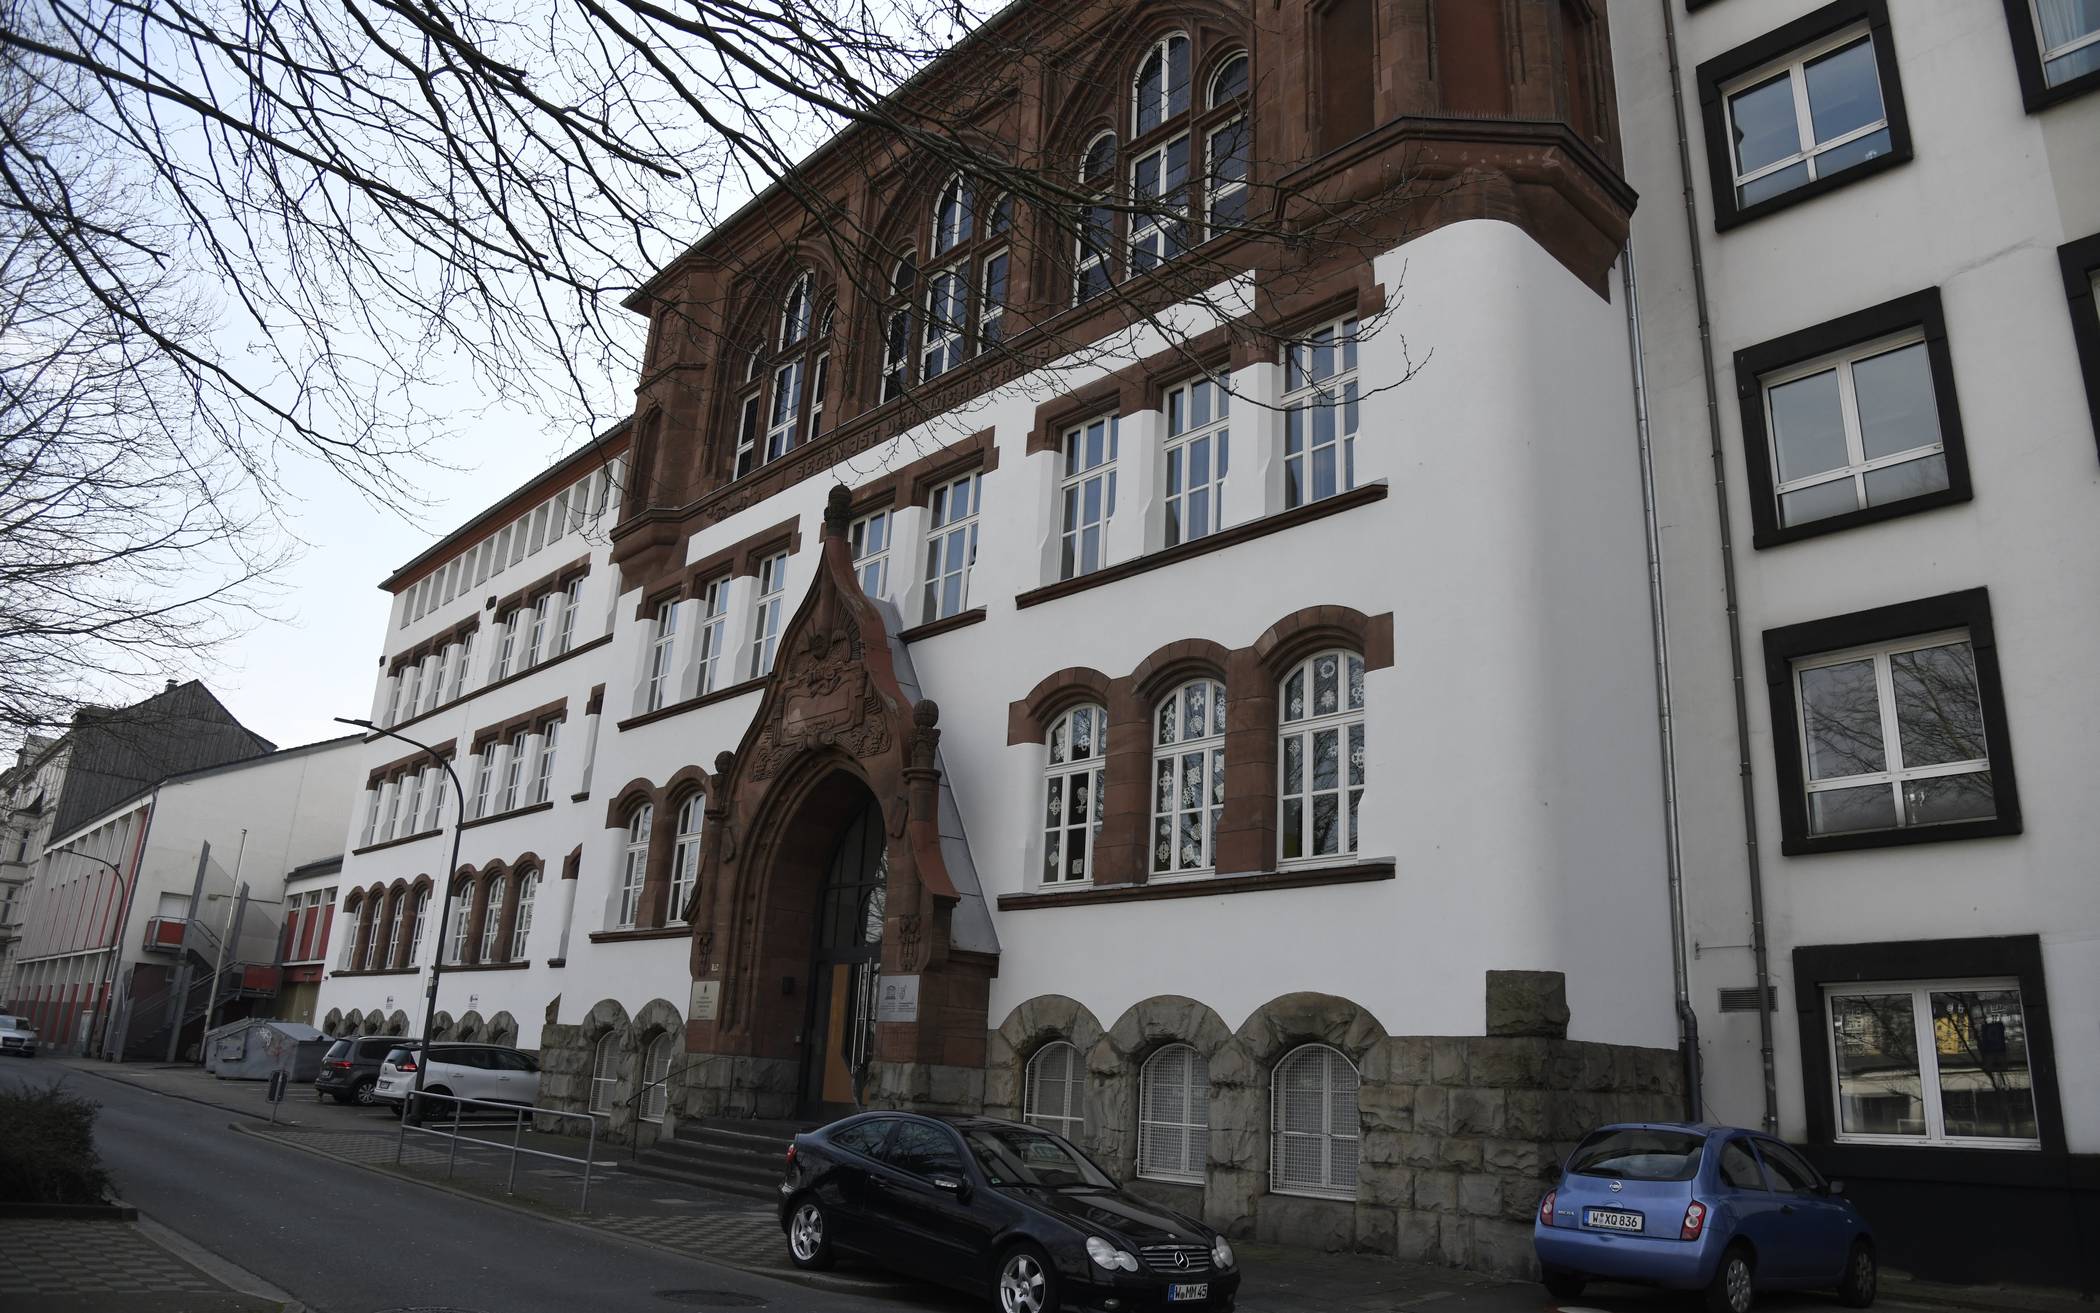 Gymnasien in Wuppertal knapp vor Gesamtschulen